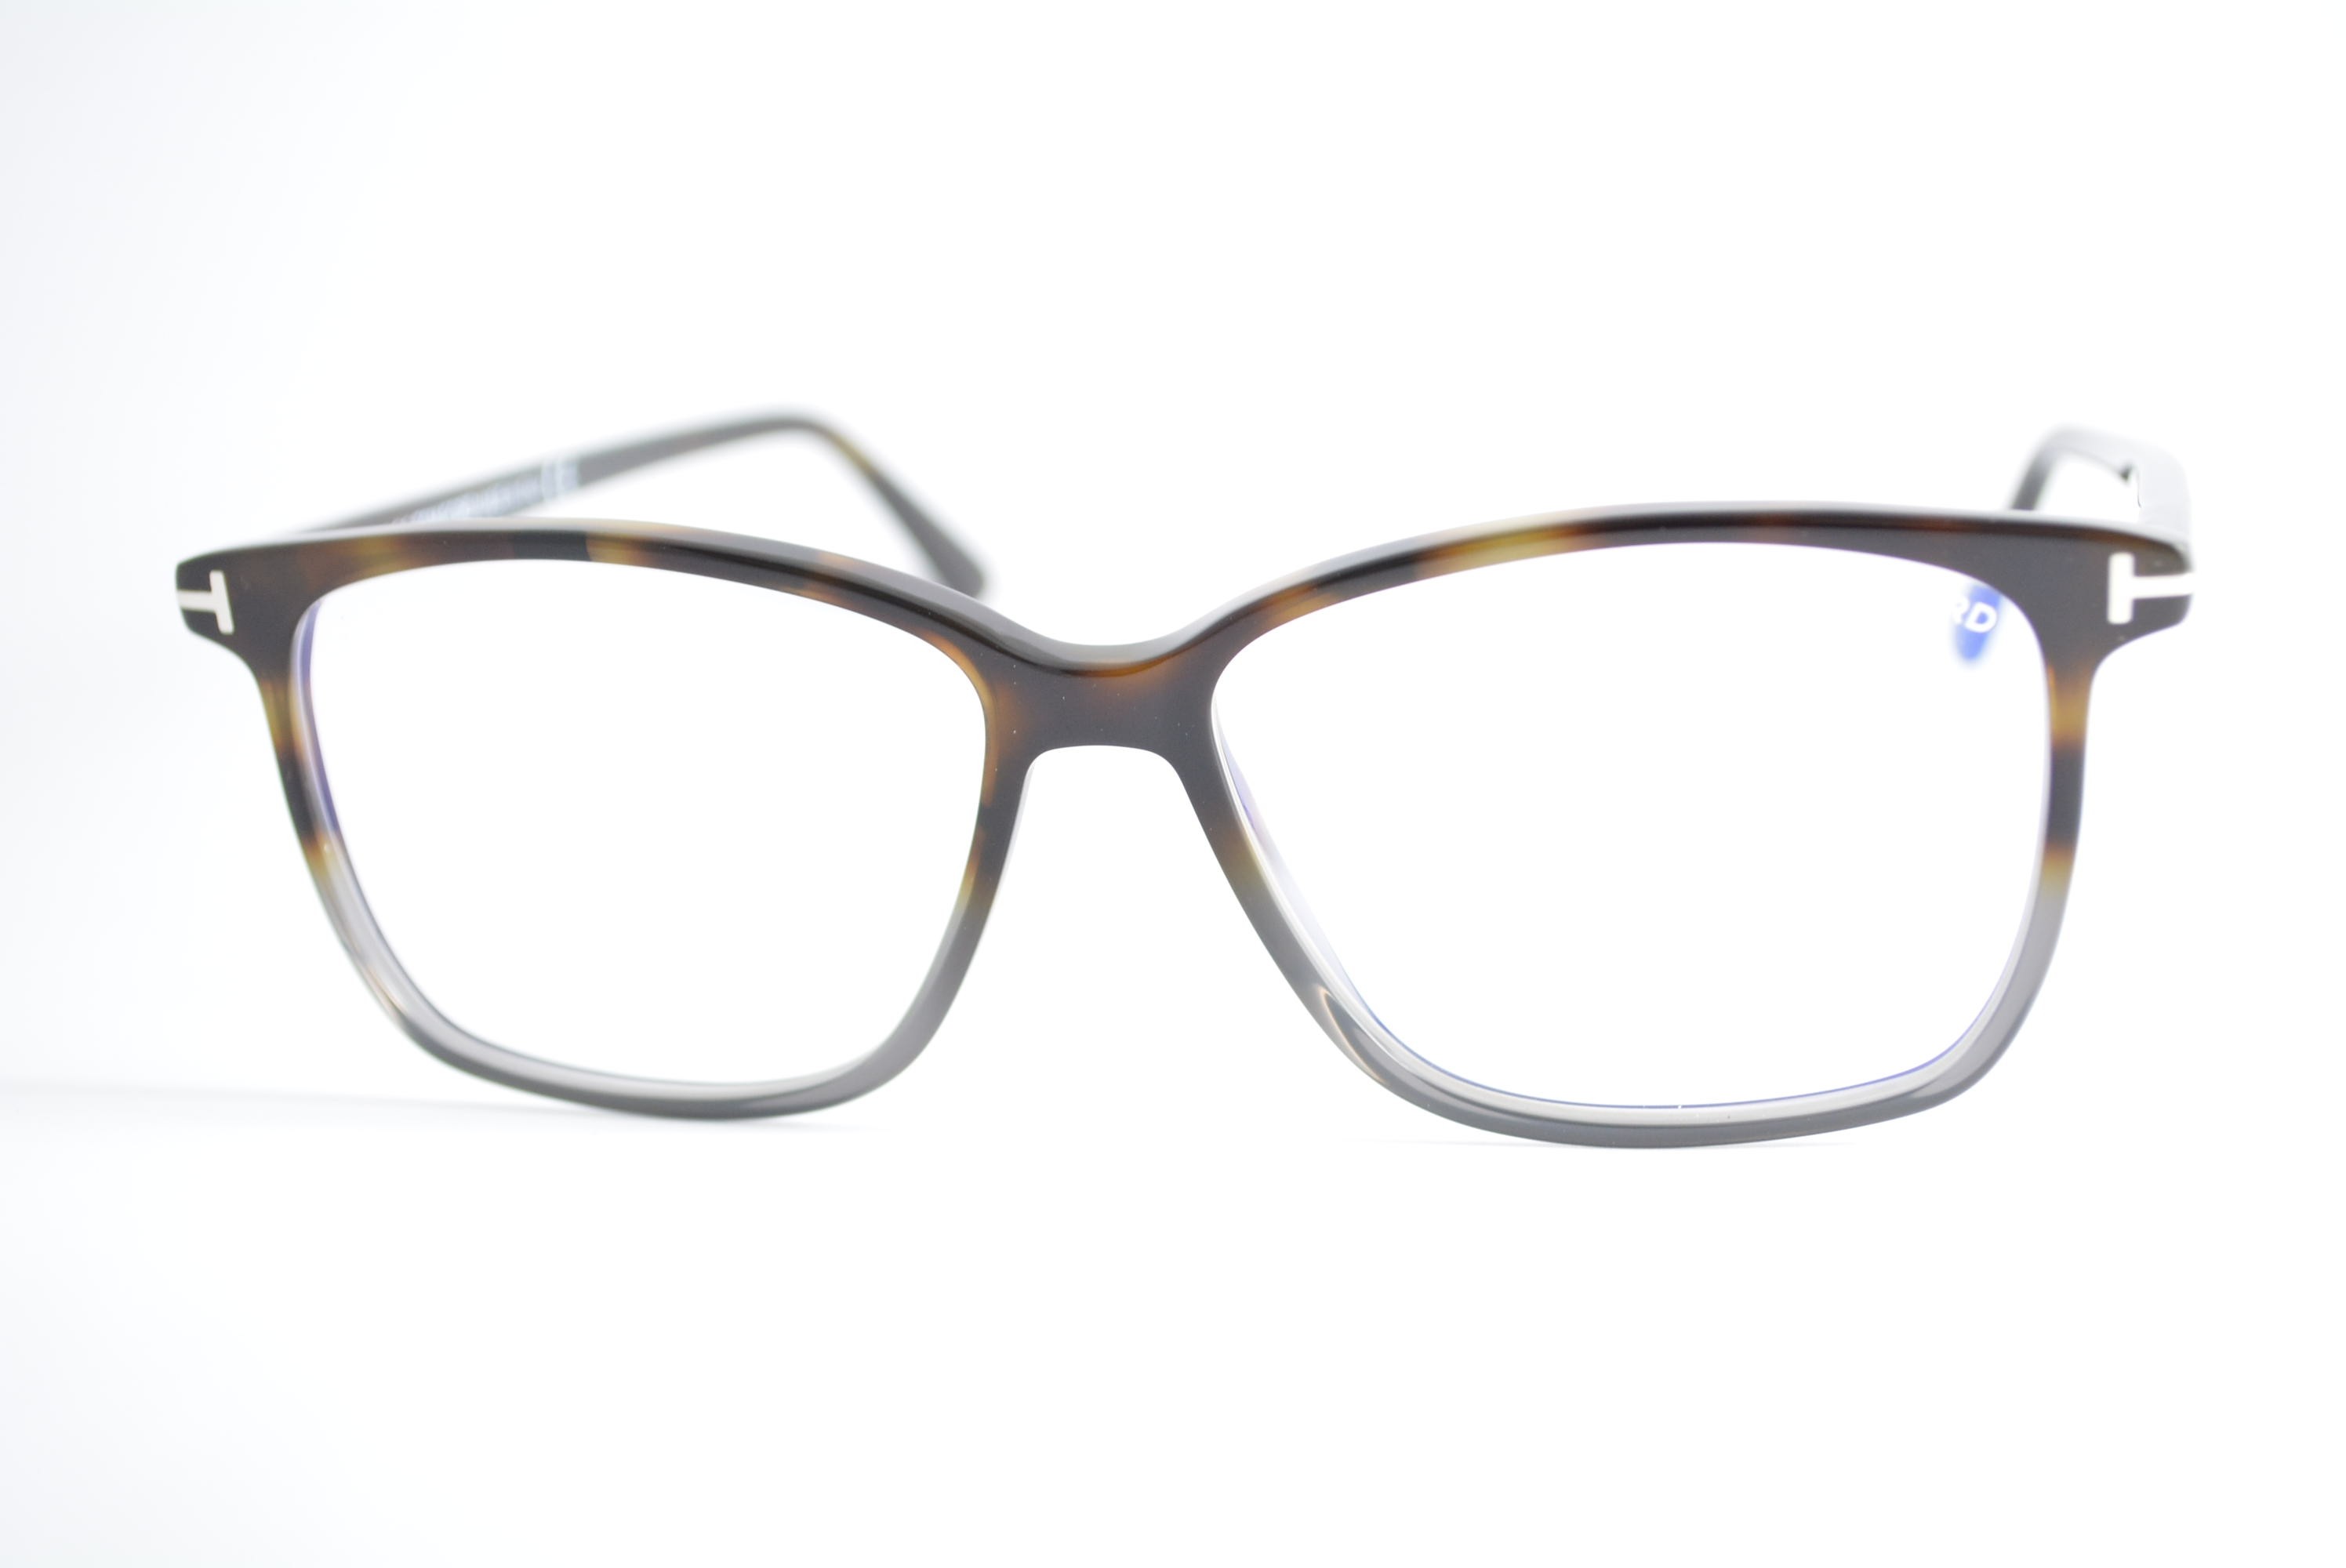 armação de óculos Tom Ford mod tf5478-b 056